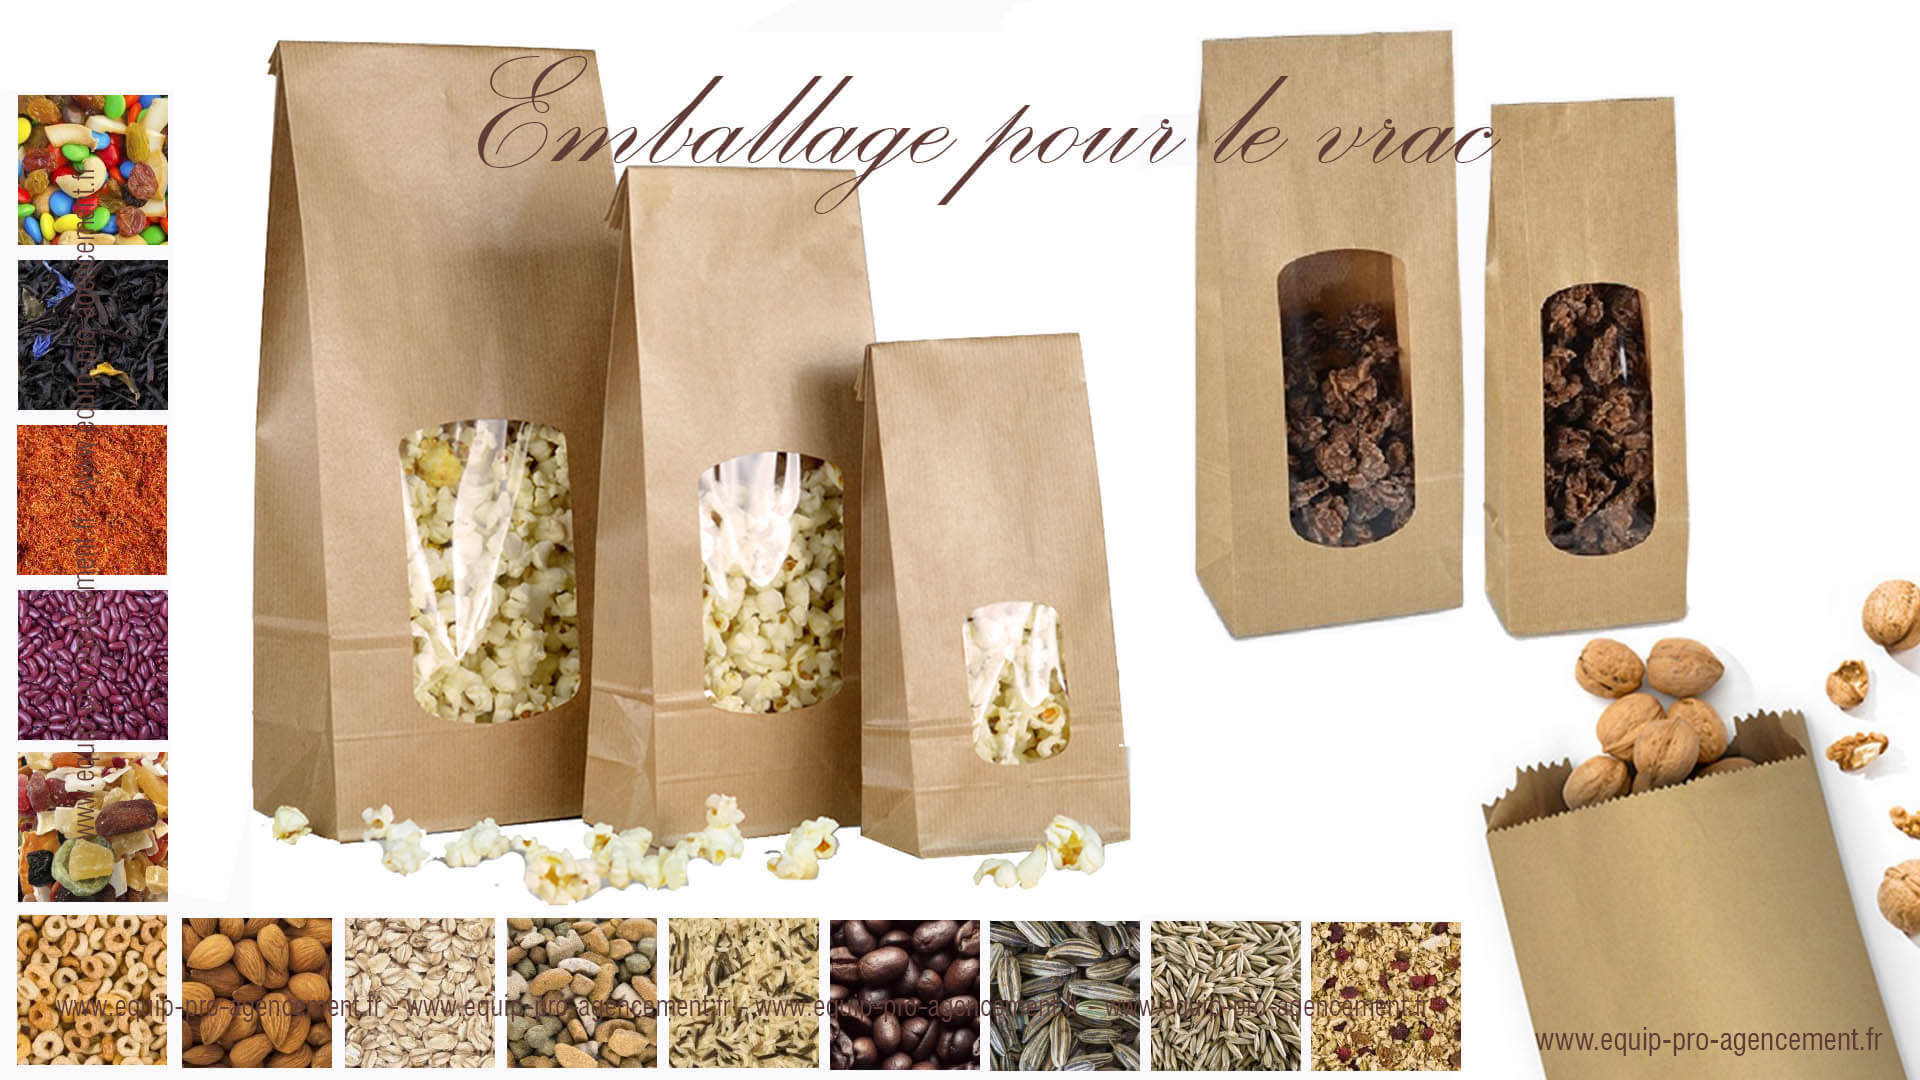 sac SOS kraft brun vergé et sachet d'emballage pour le vrac, produits bio, papier recyclé apte au contact alimentaire fabriqué en europe